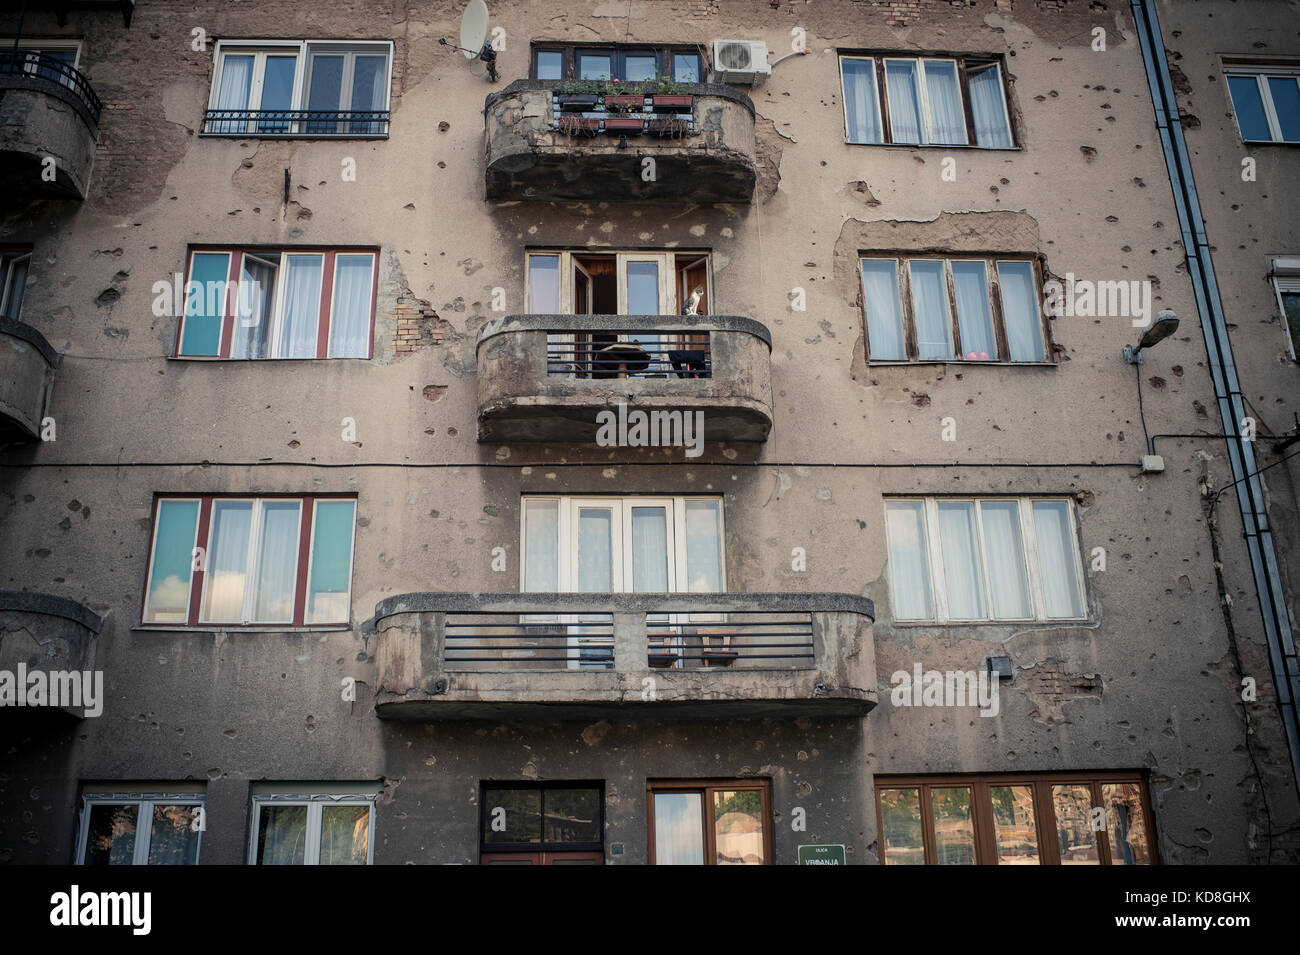 La plupart des habitations de Sarajevo ont encore des traces de la guerre. Sarajevo mai 2015. Most of buildings are still destroyed from the war time, Stock Photo